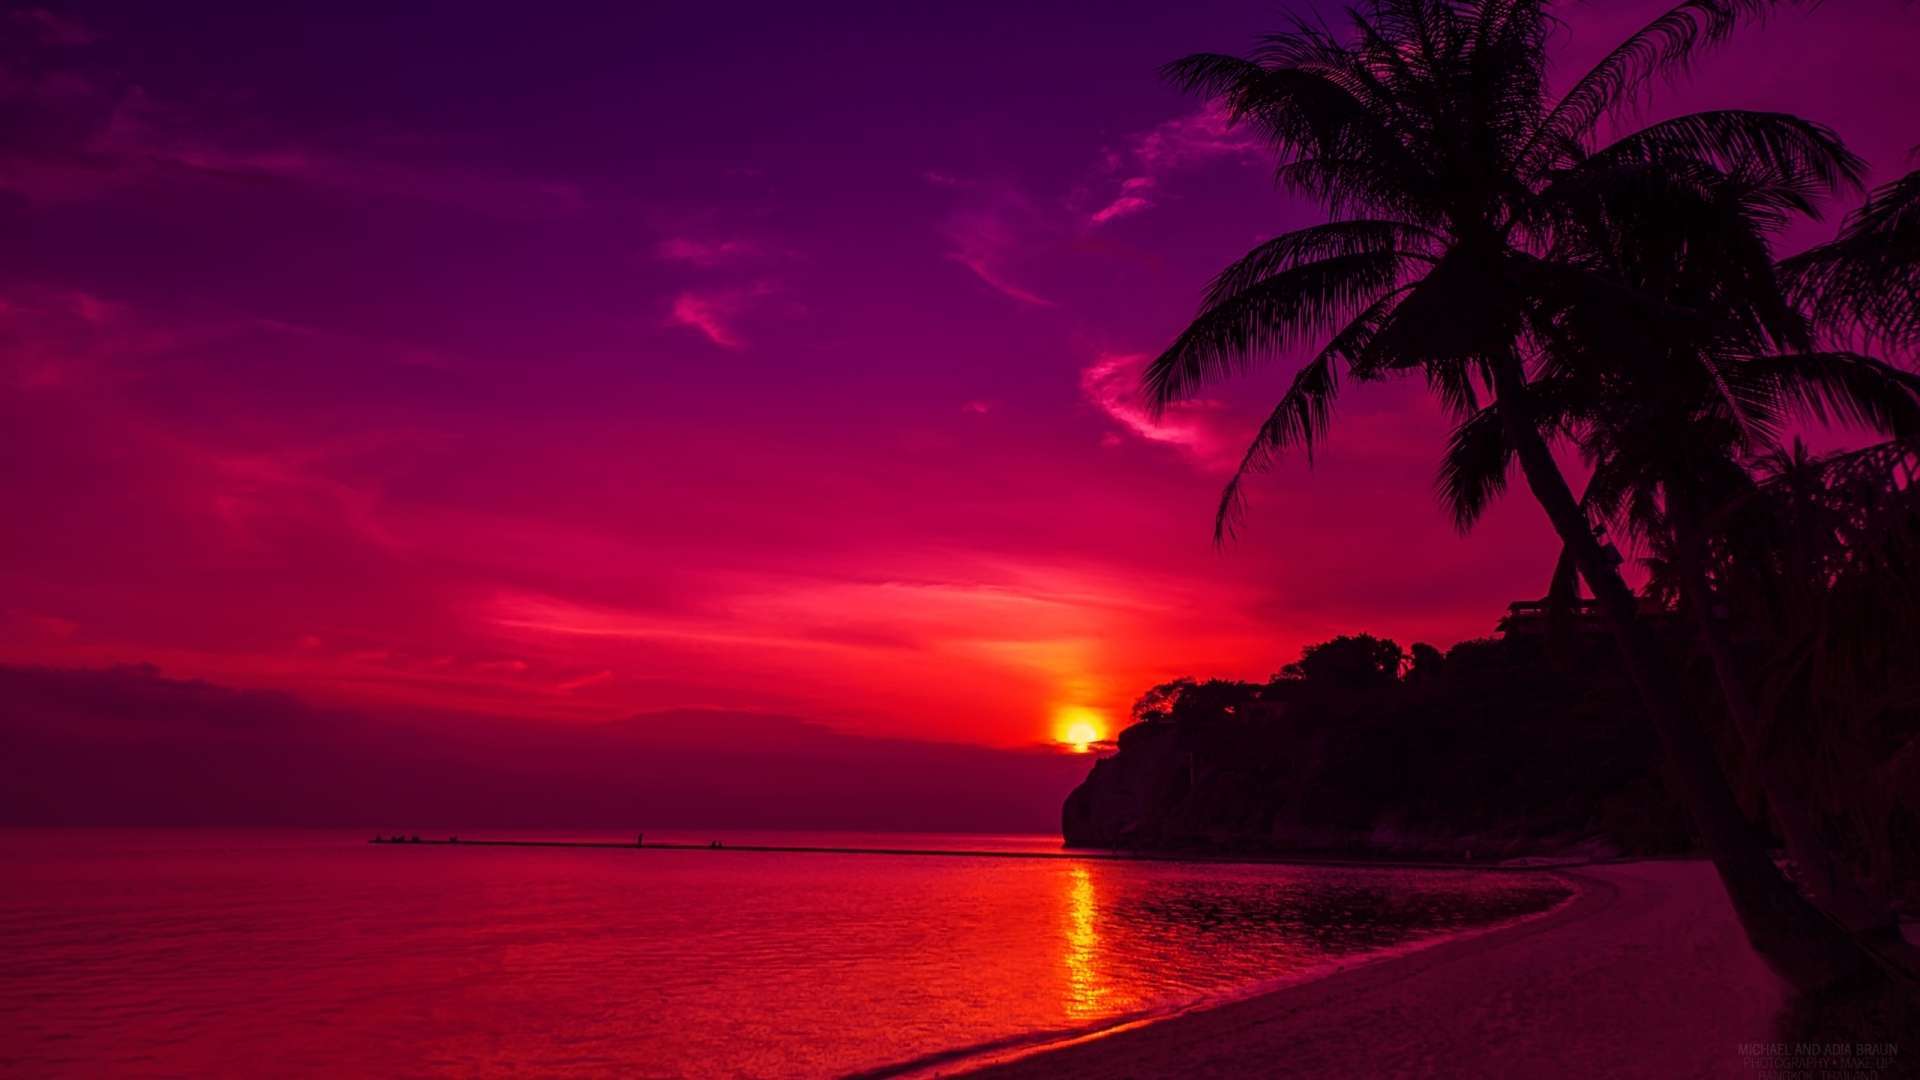 Wallpaper For > HD Beach Sunset Wallpaper 1080p